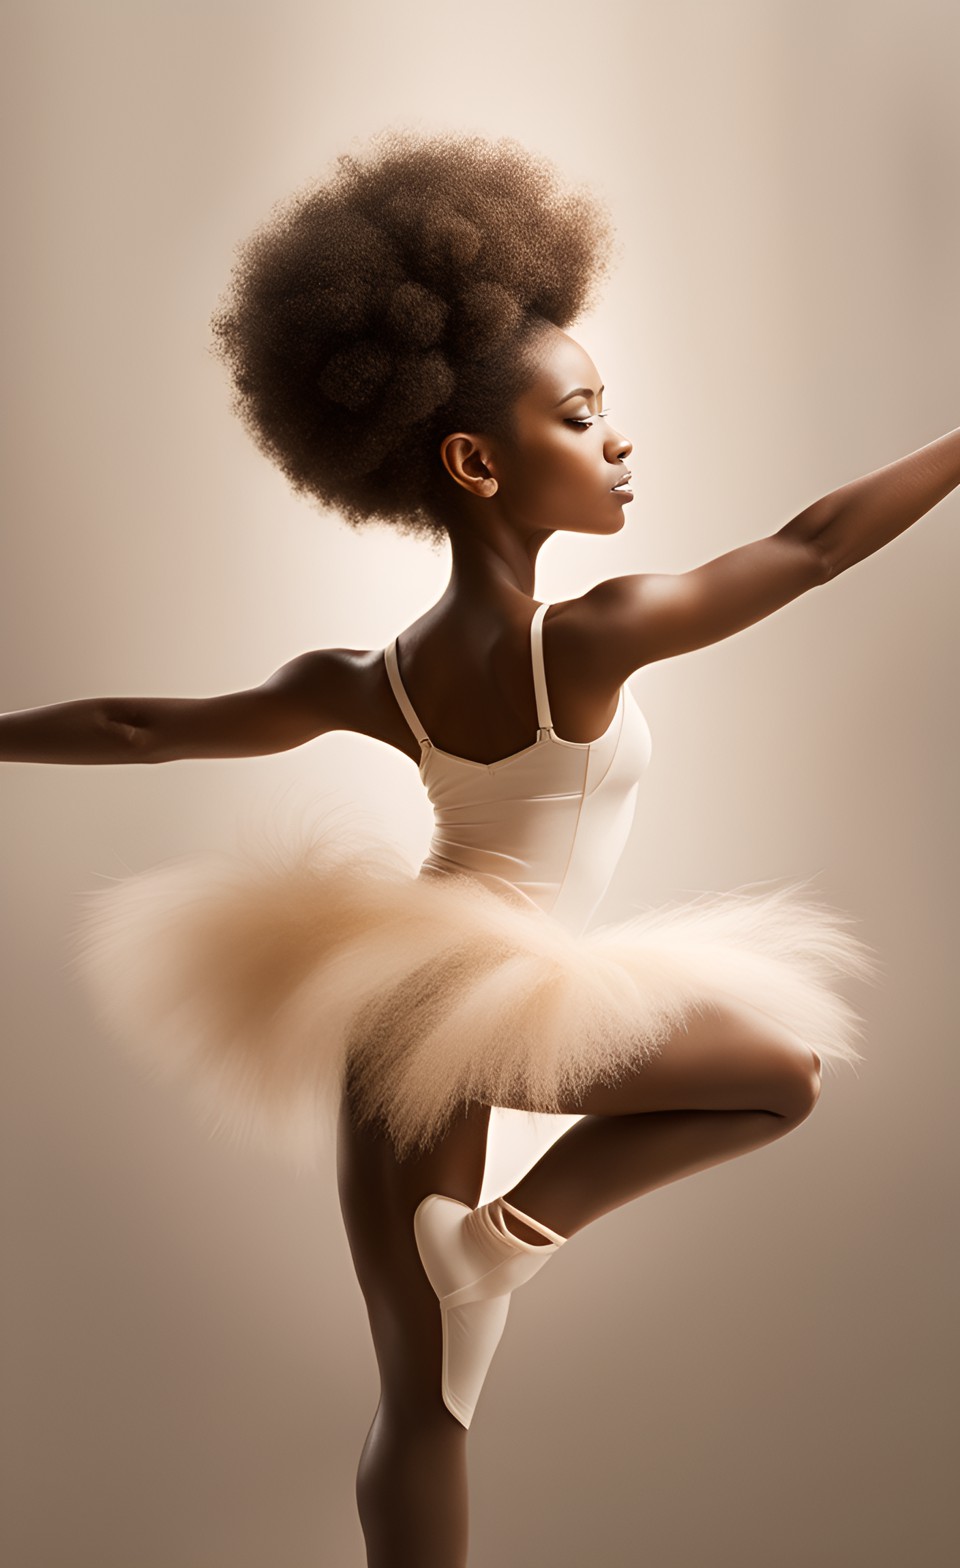 Jamaican magical ballet dancer Jamai208